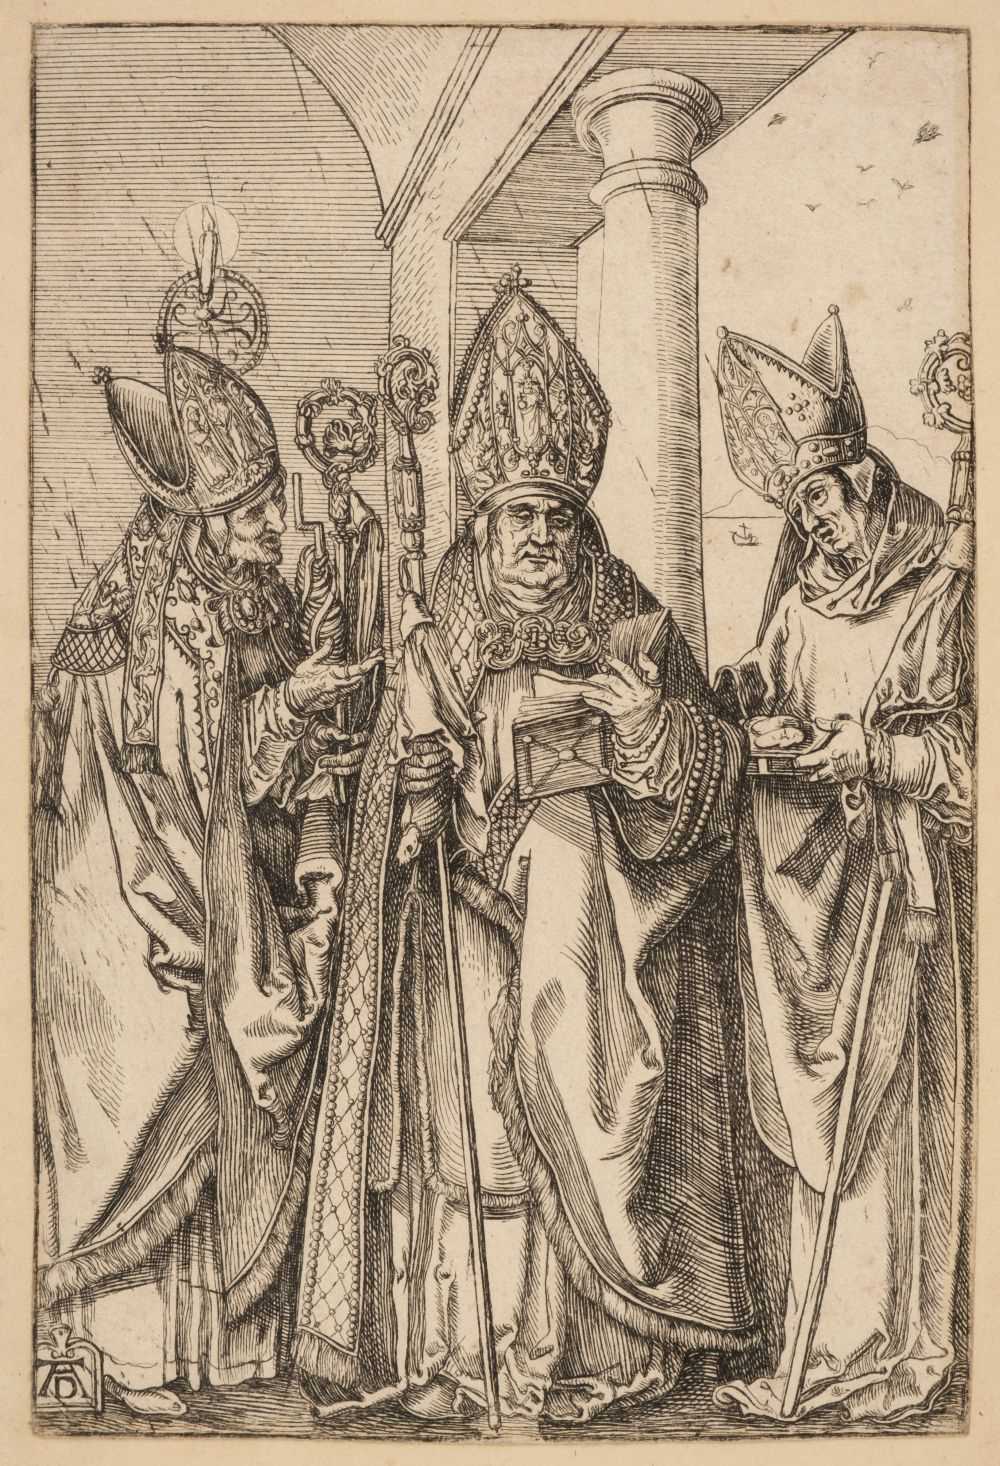 Lot 384 - Durer (Albrecht, 1471-1528). The Three Bishops, Nicholas, Ulrich and Erasmus, circa 1510